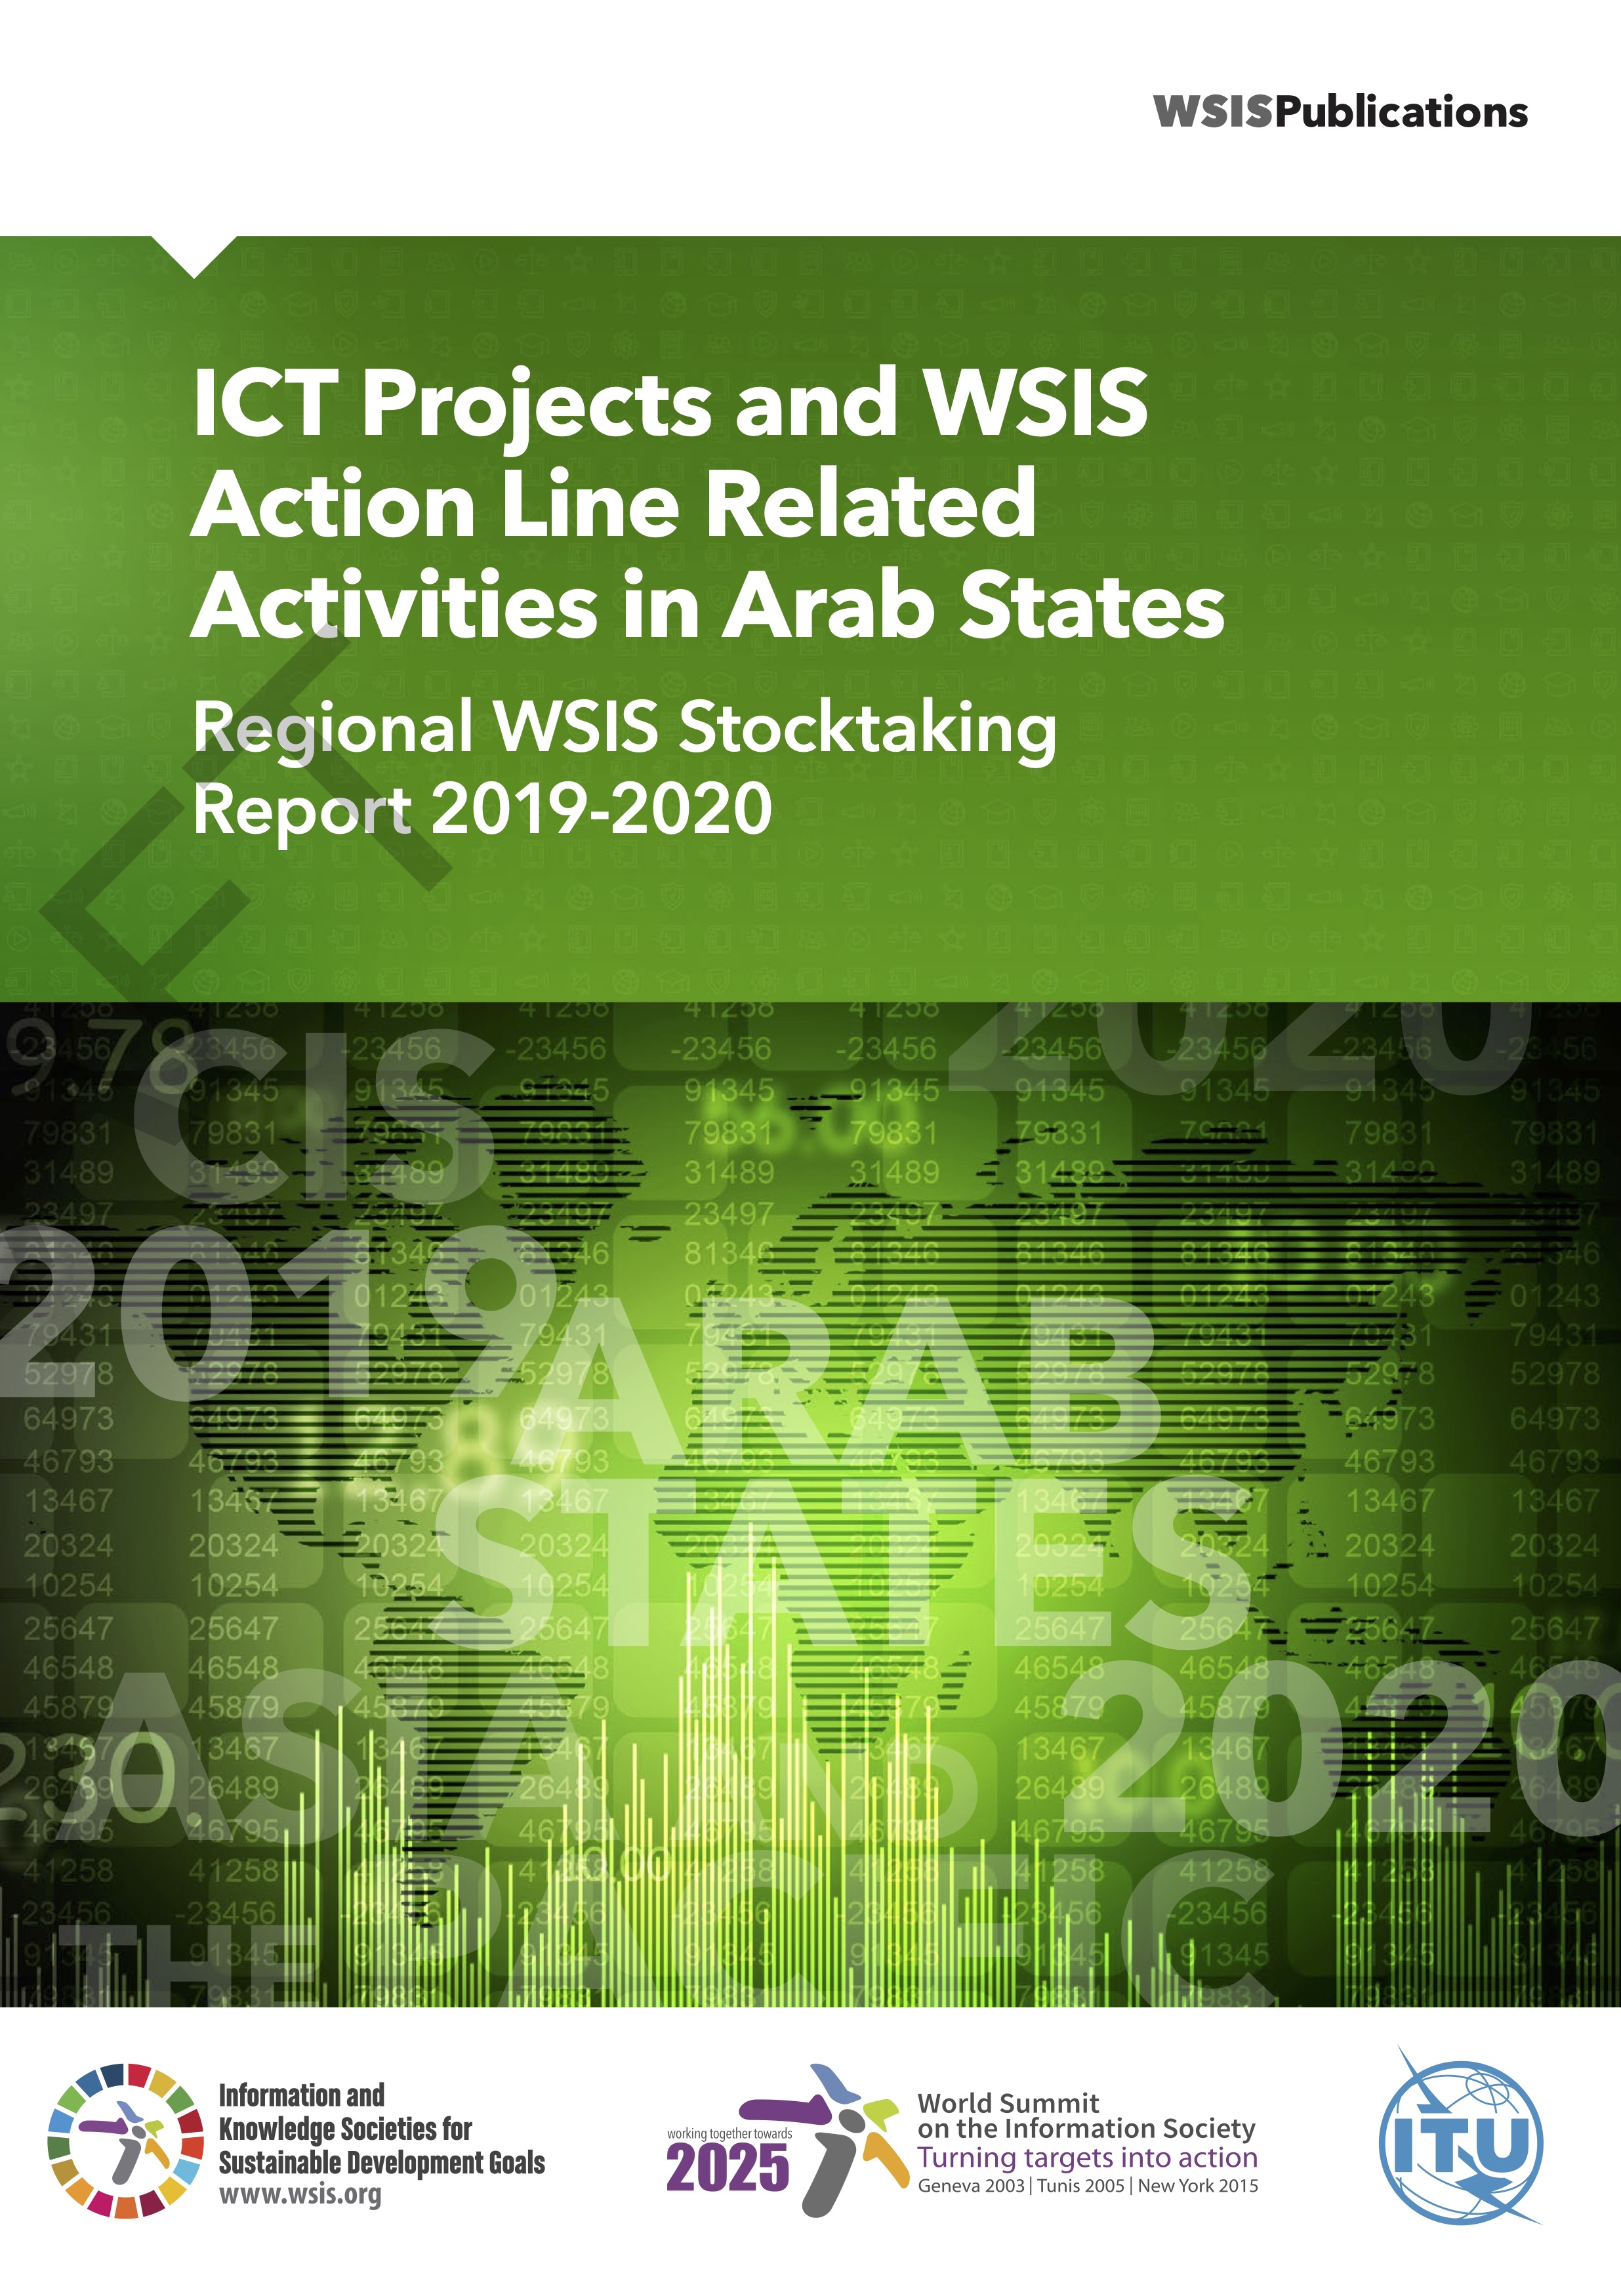 Regional WSIS Stocktaking Report 2019-2020 — Arab States